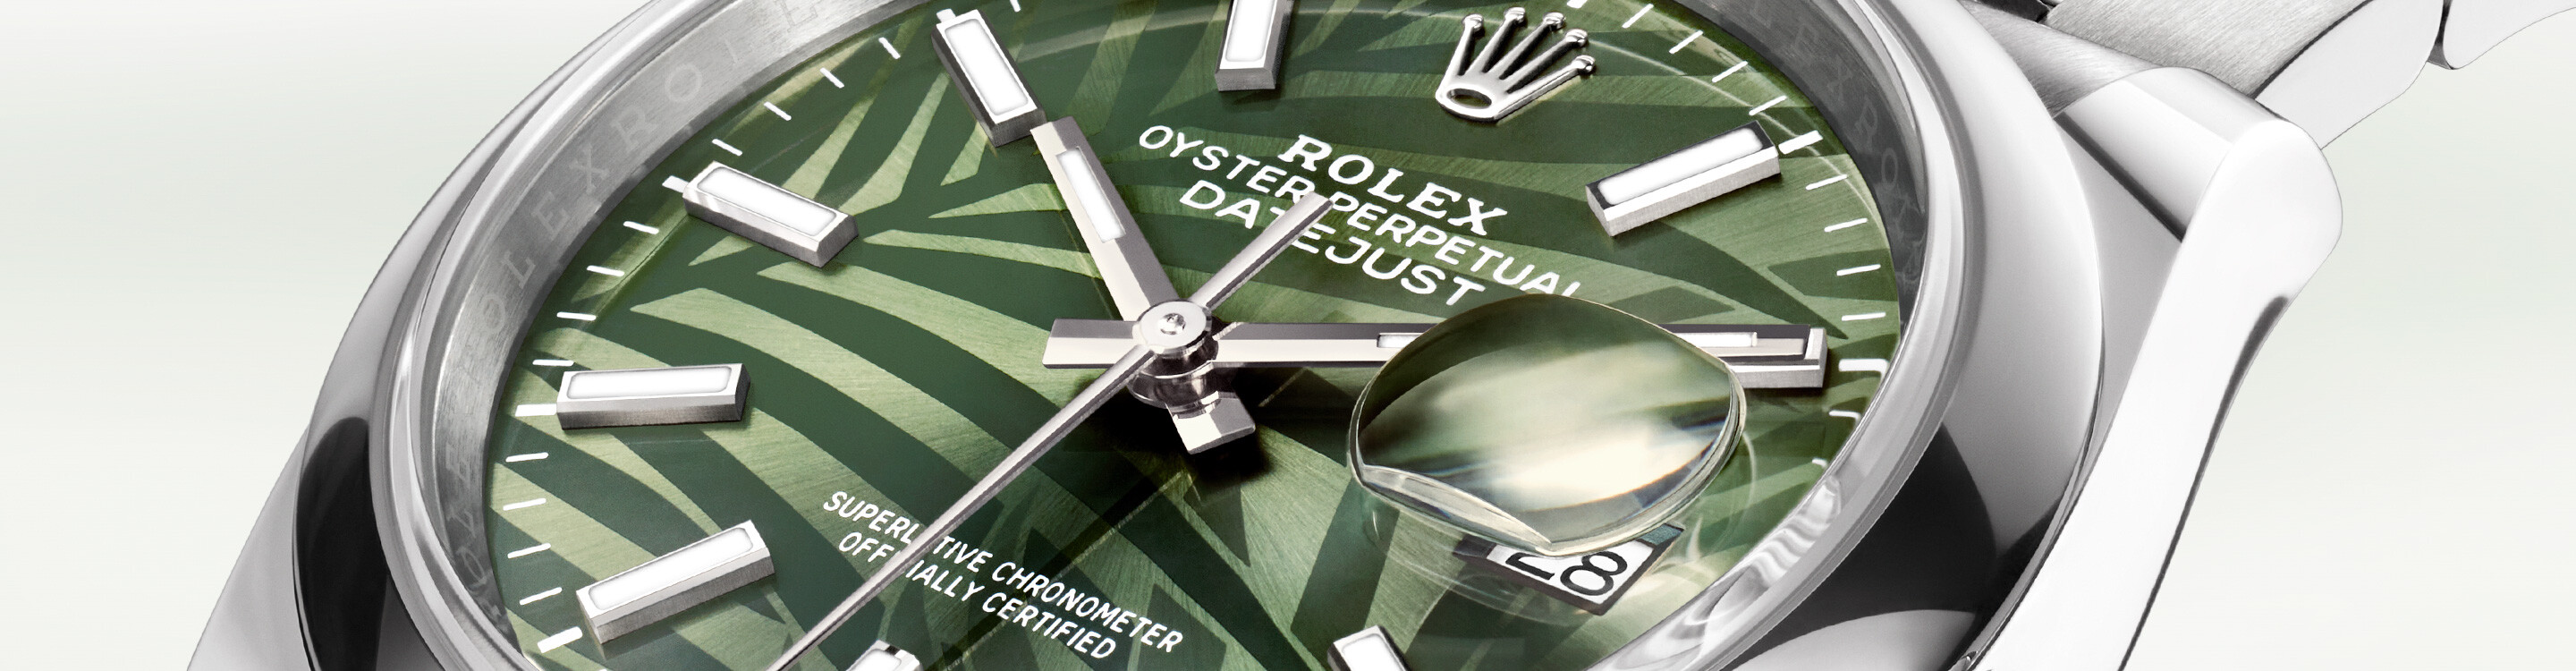 Rolex Watch Datejust 31